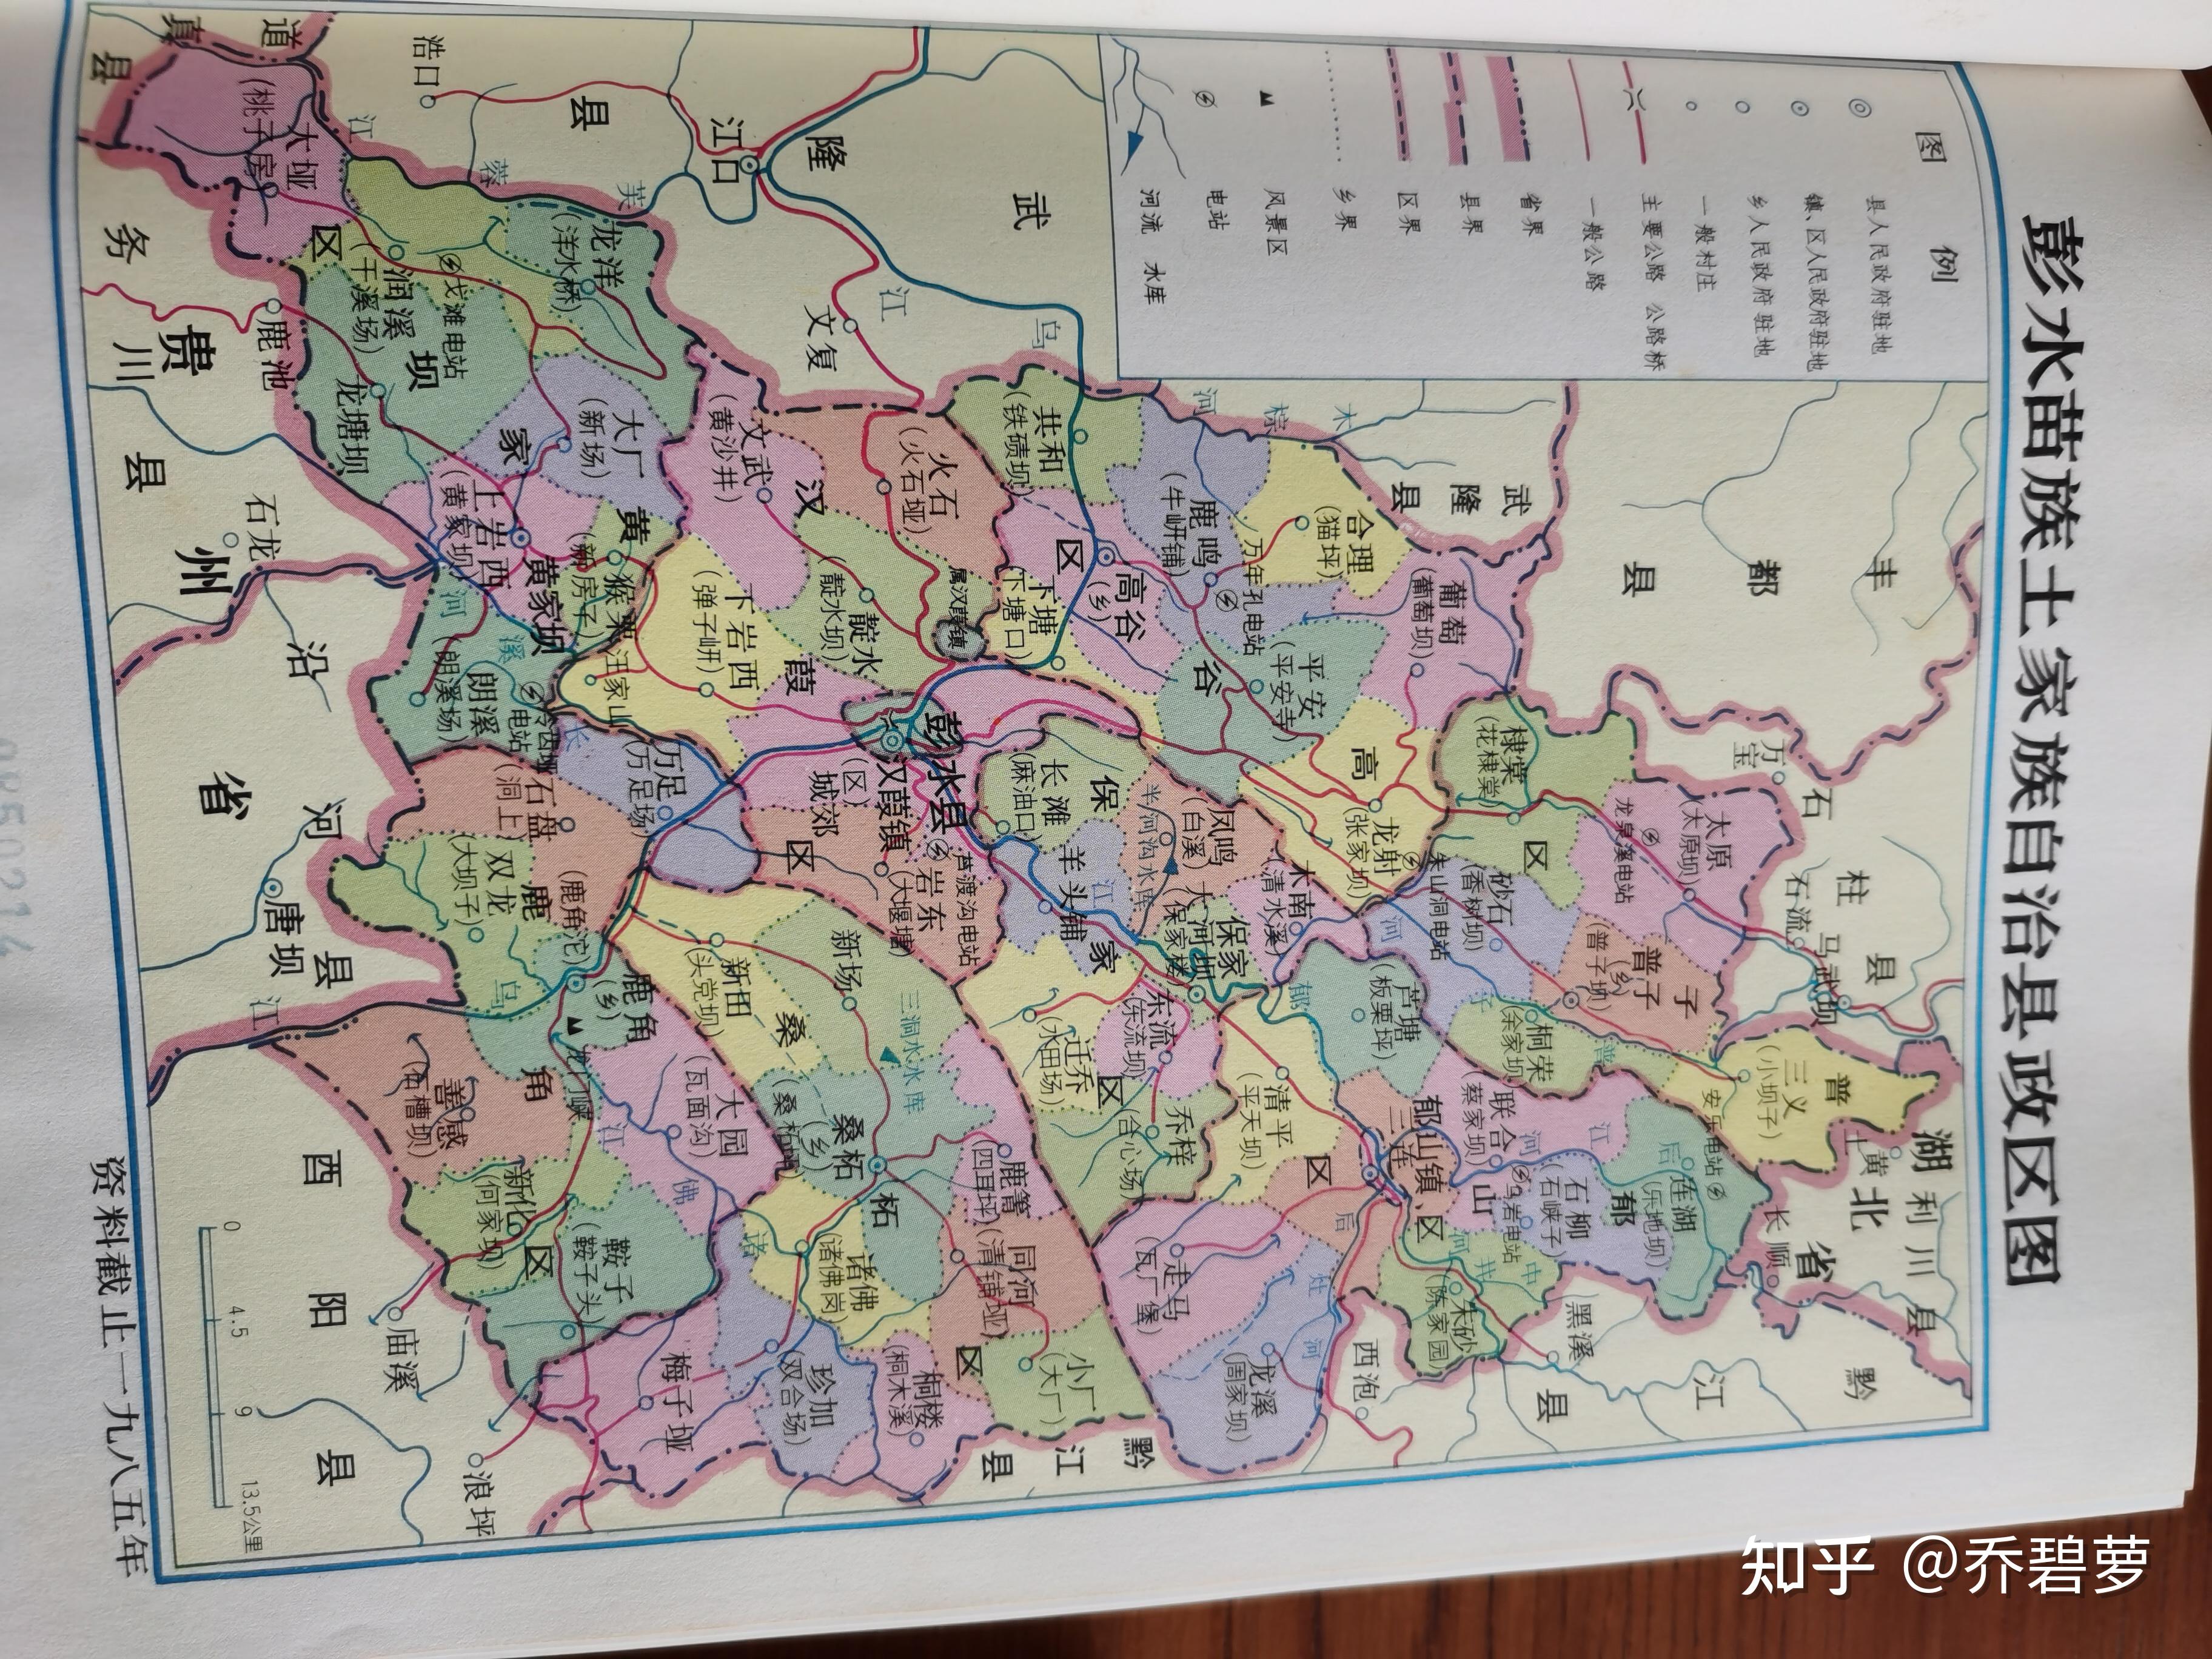 下几张是为《彭水县志》的序以及80年代地图和彭水人民敢于抗争的记载